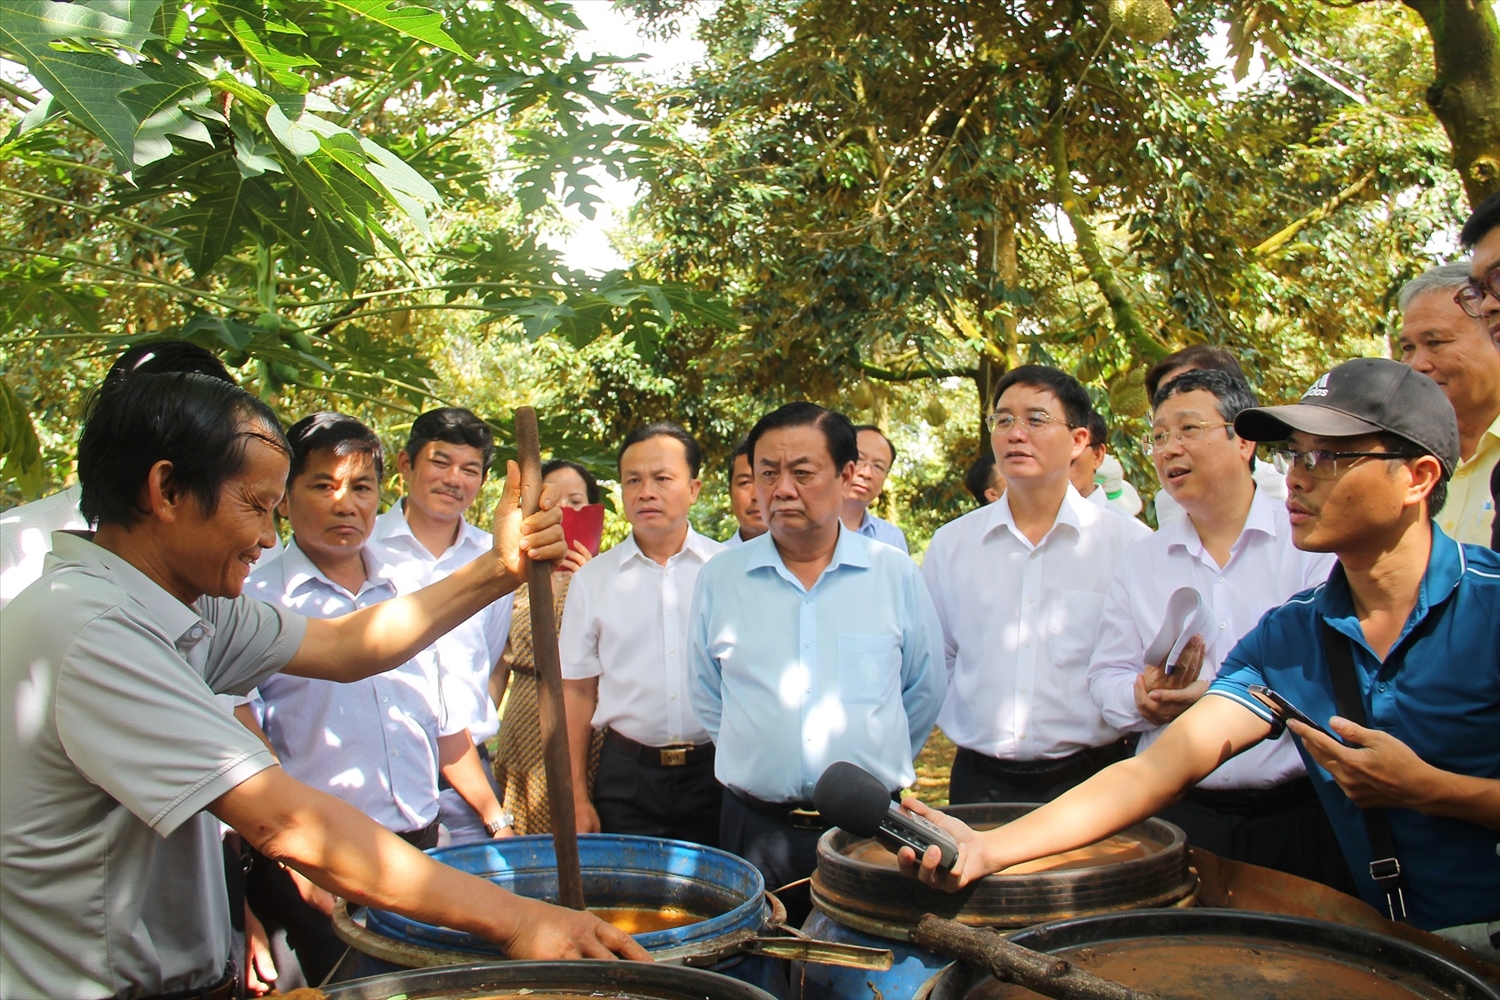 Nông dân huyện Krông Păk tự điều chế thuốc bằng các loại thực vật để phun trừ sâu bệnh cho cây sầu riêng trong vườn